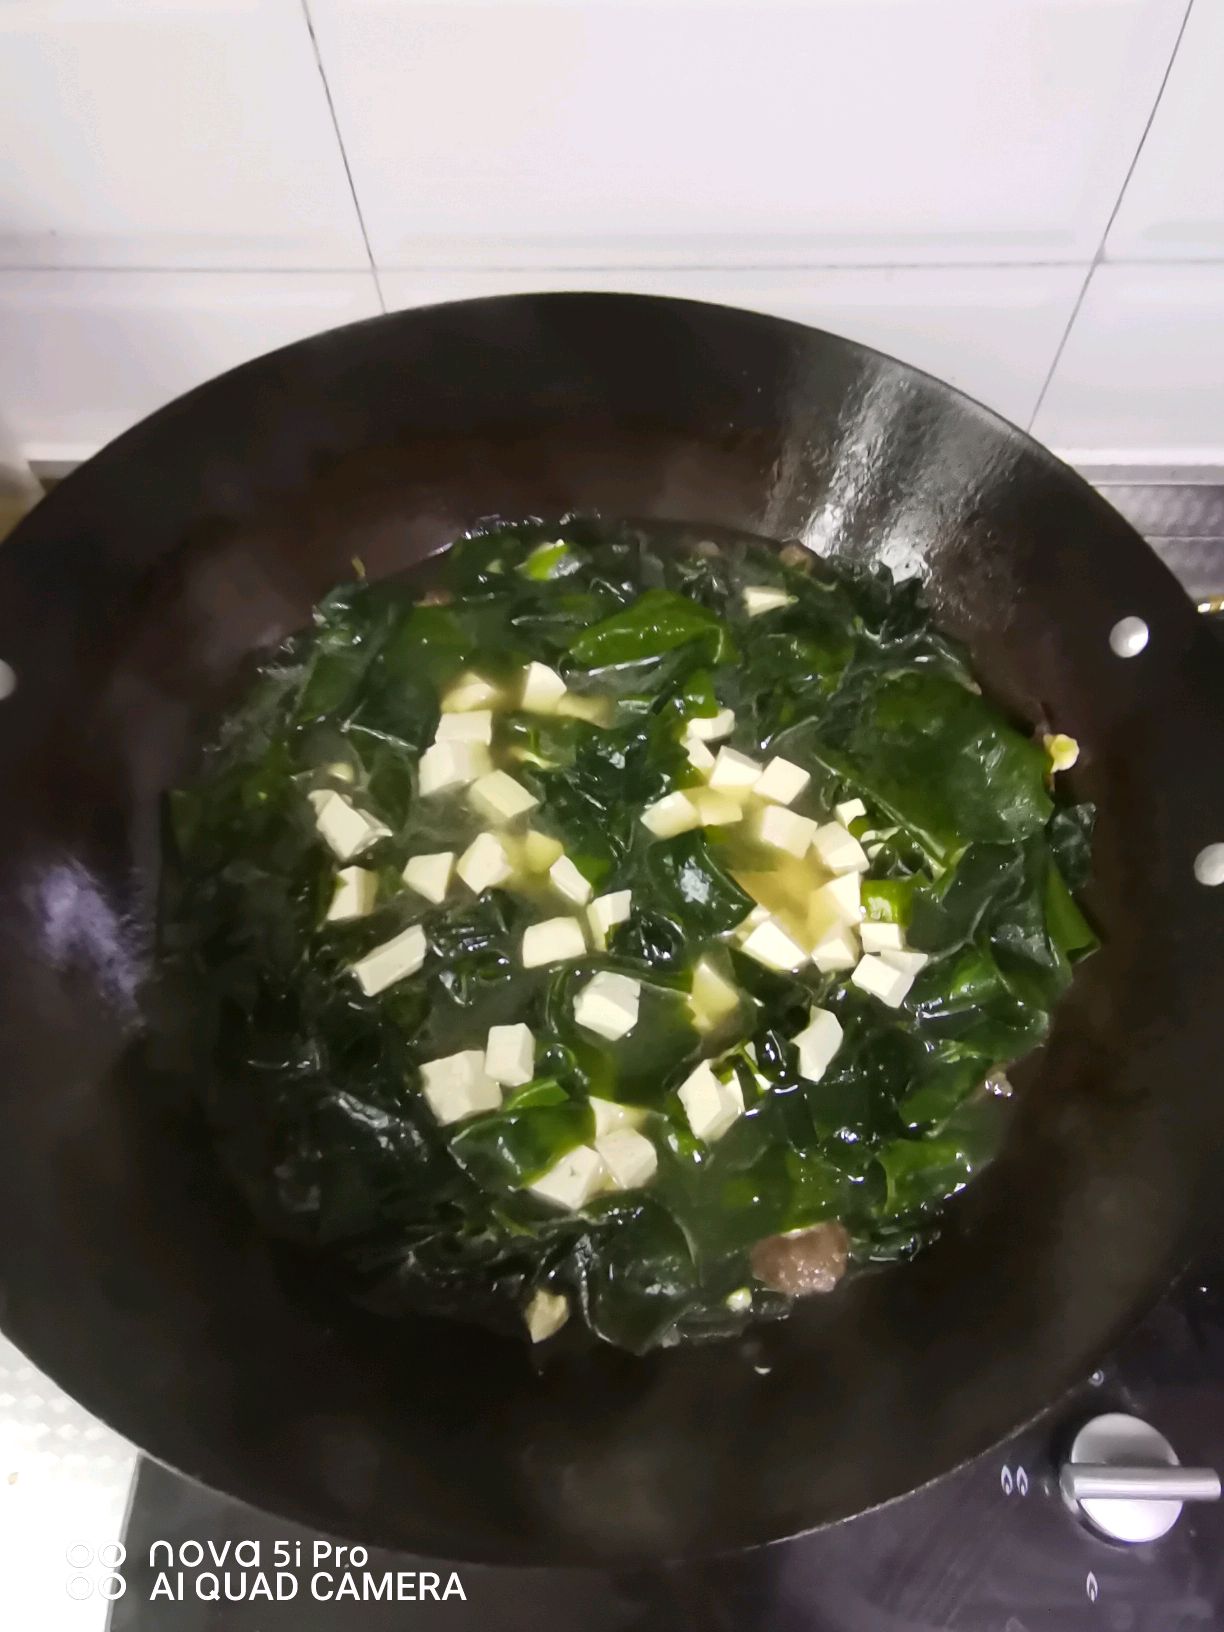 韩式海带豆腐汤